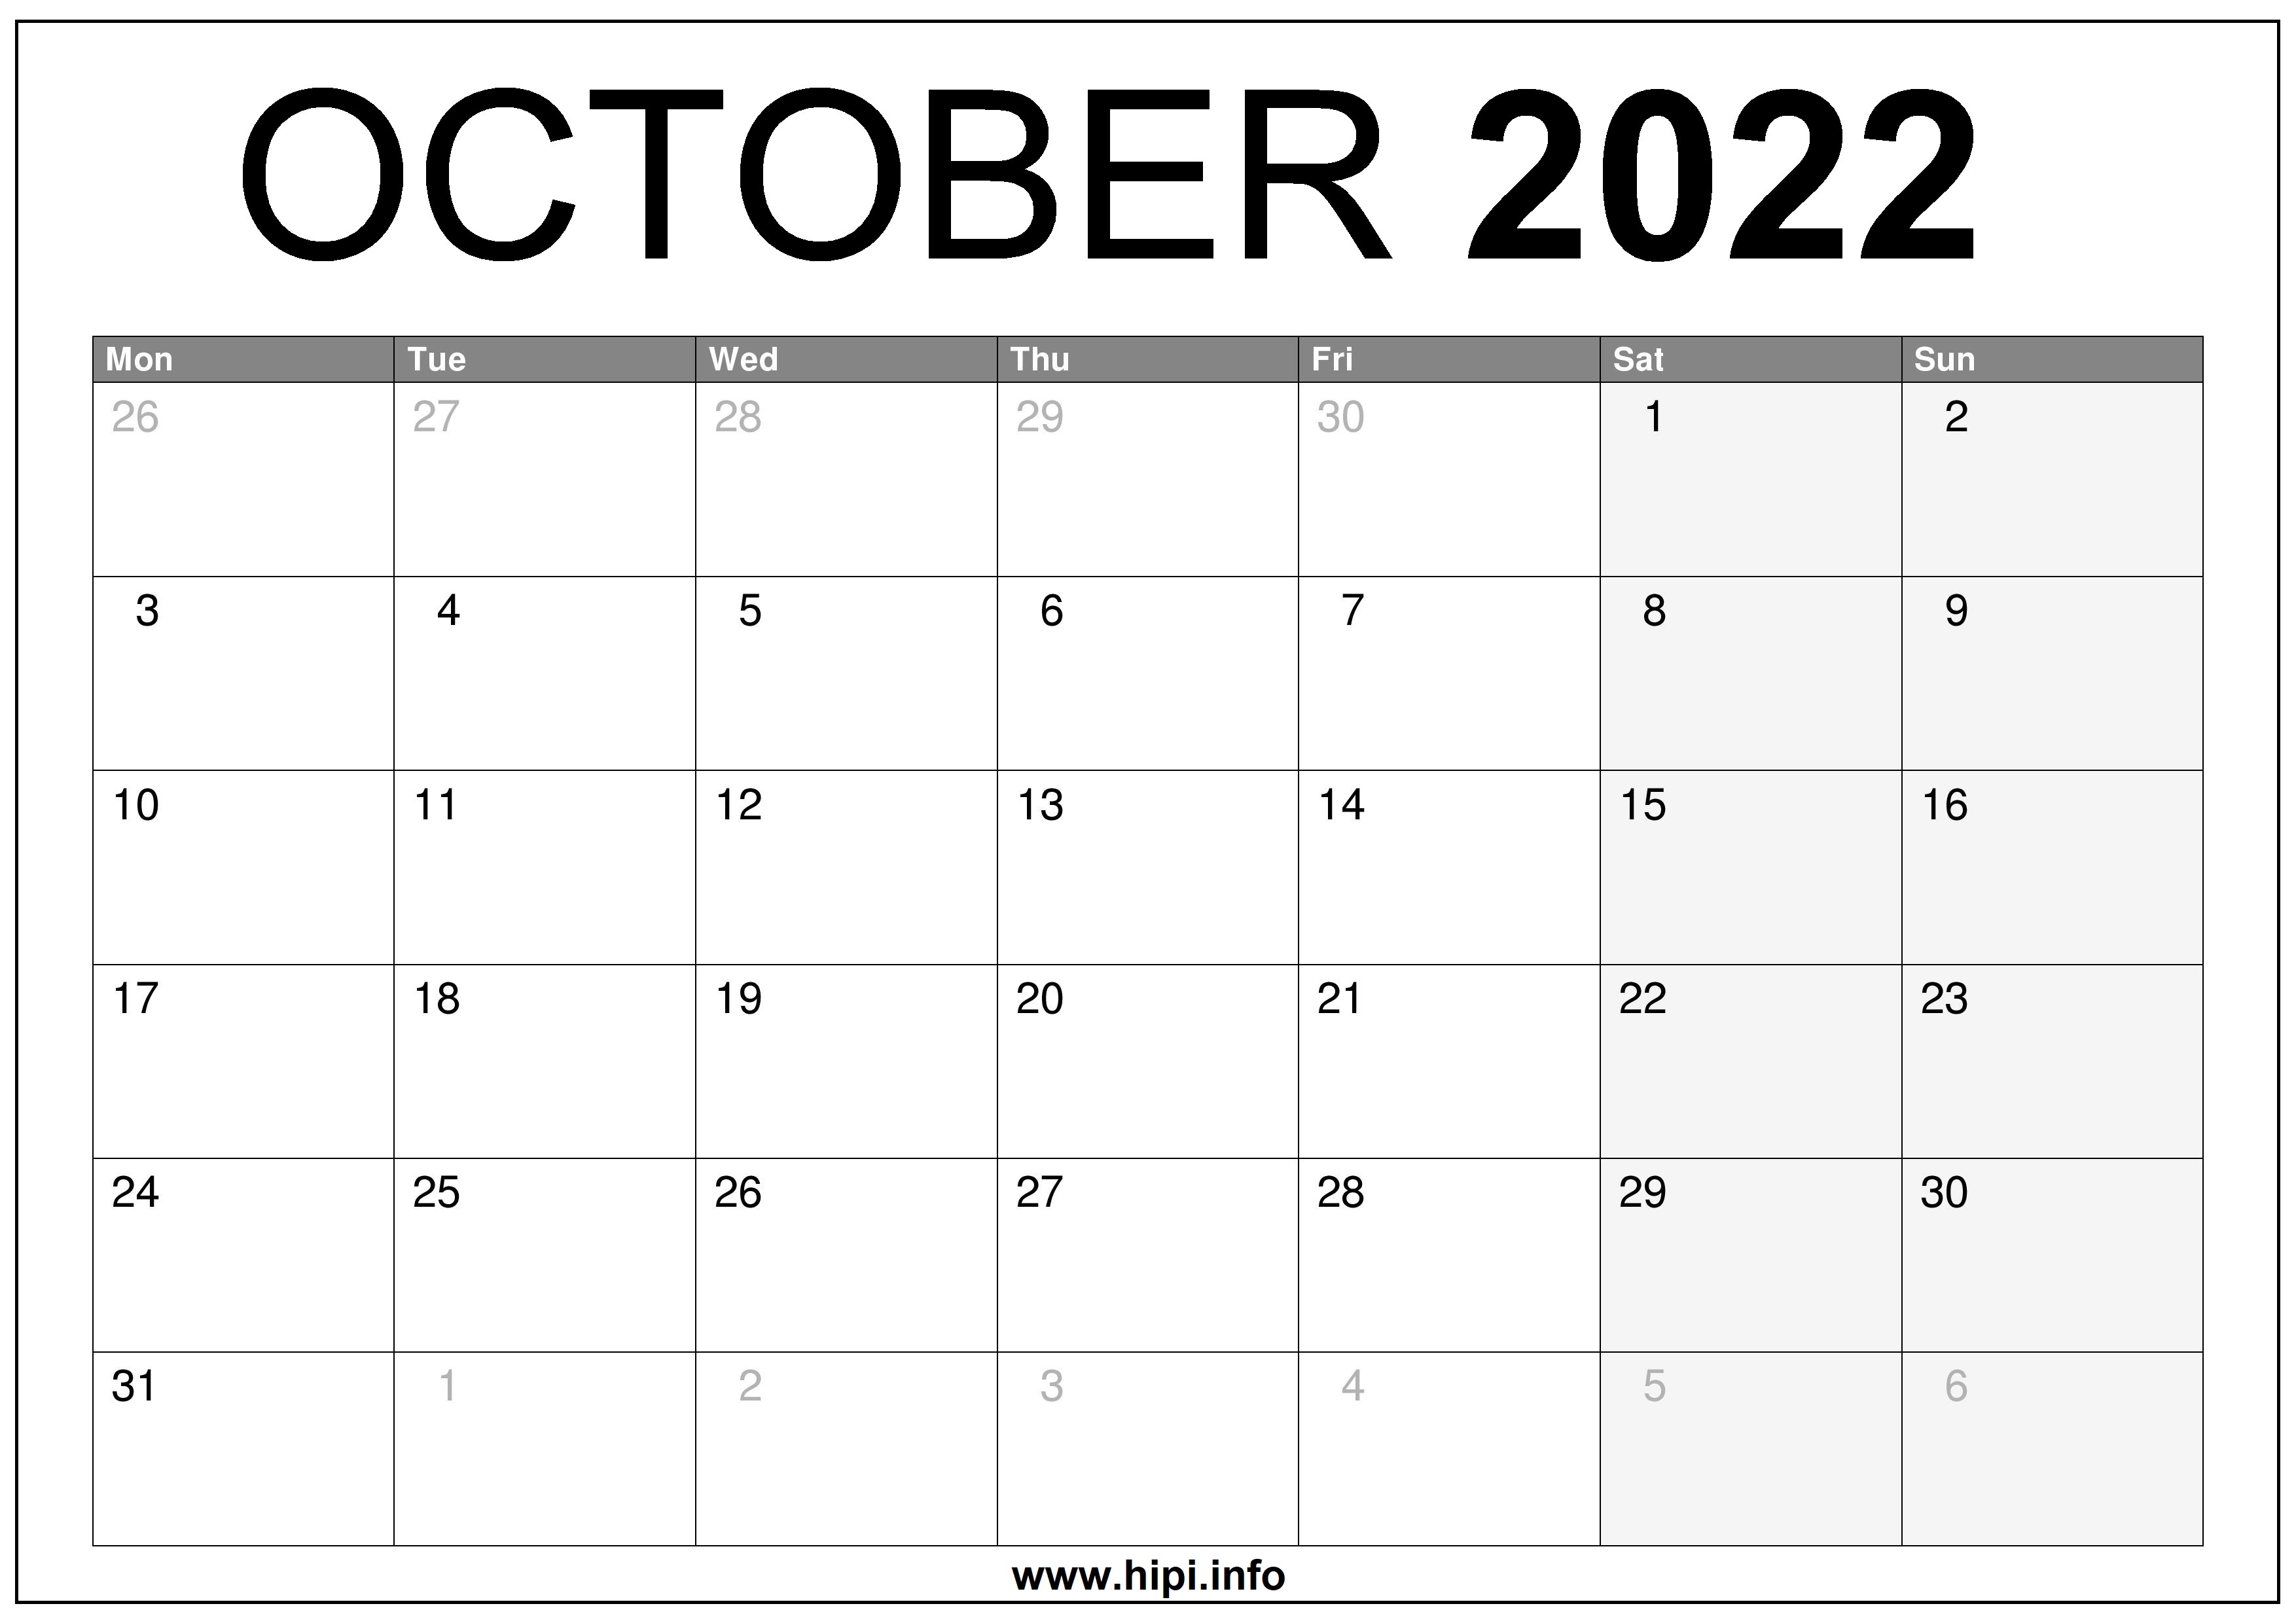 October Calendar To Print 2022 October 2022 Uk Calendar Printable Free - Hipi.info | Calendars Printable  Free